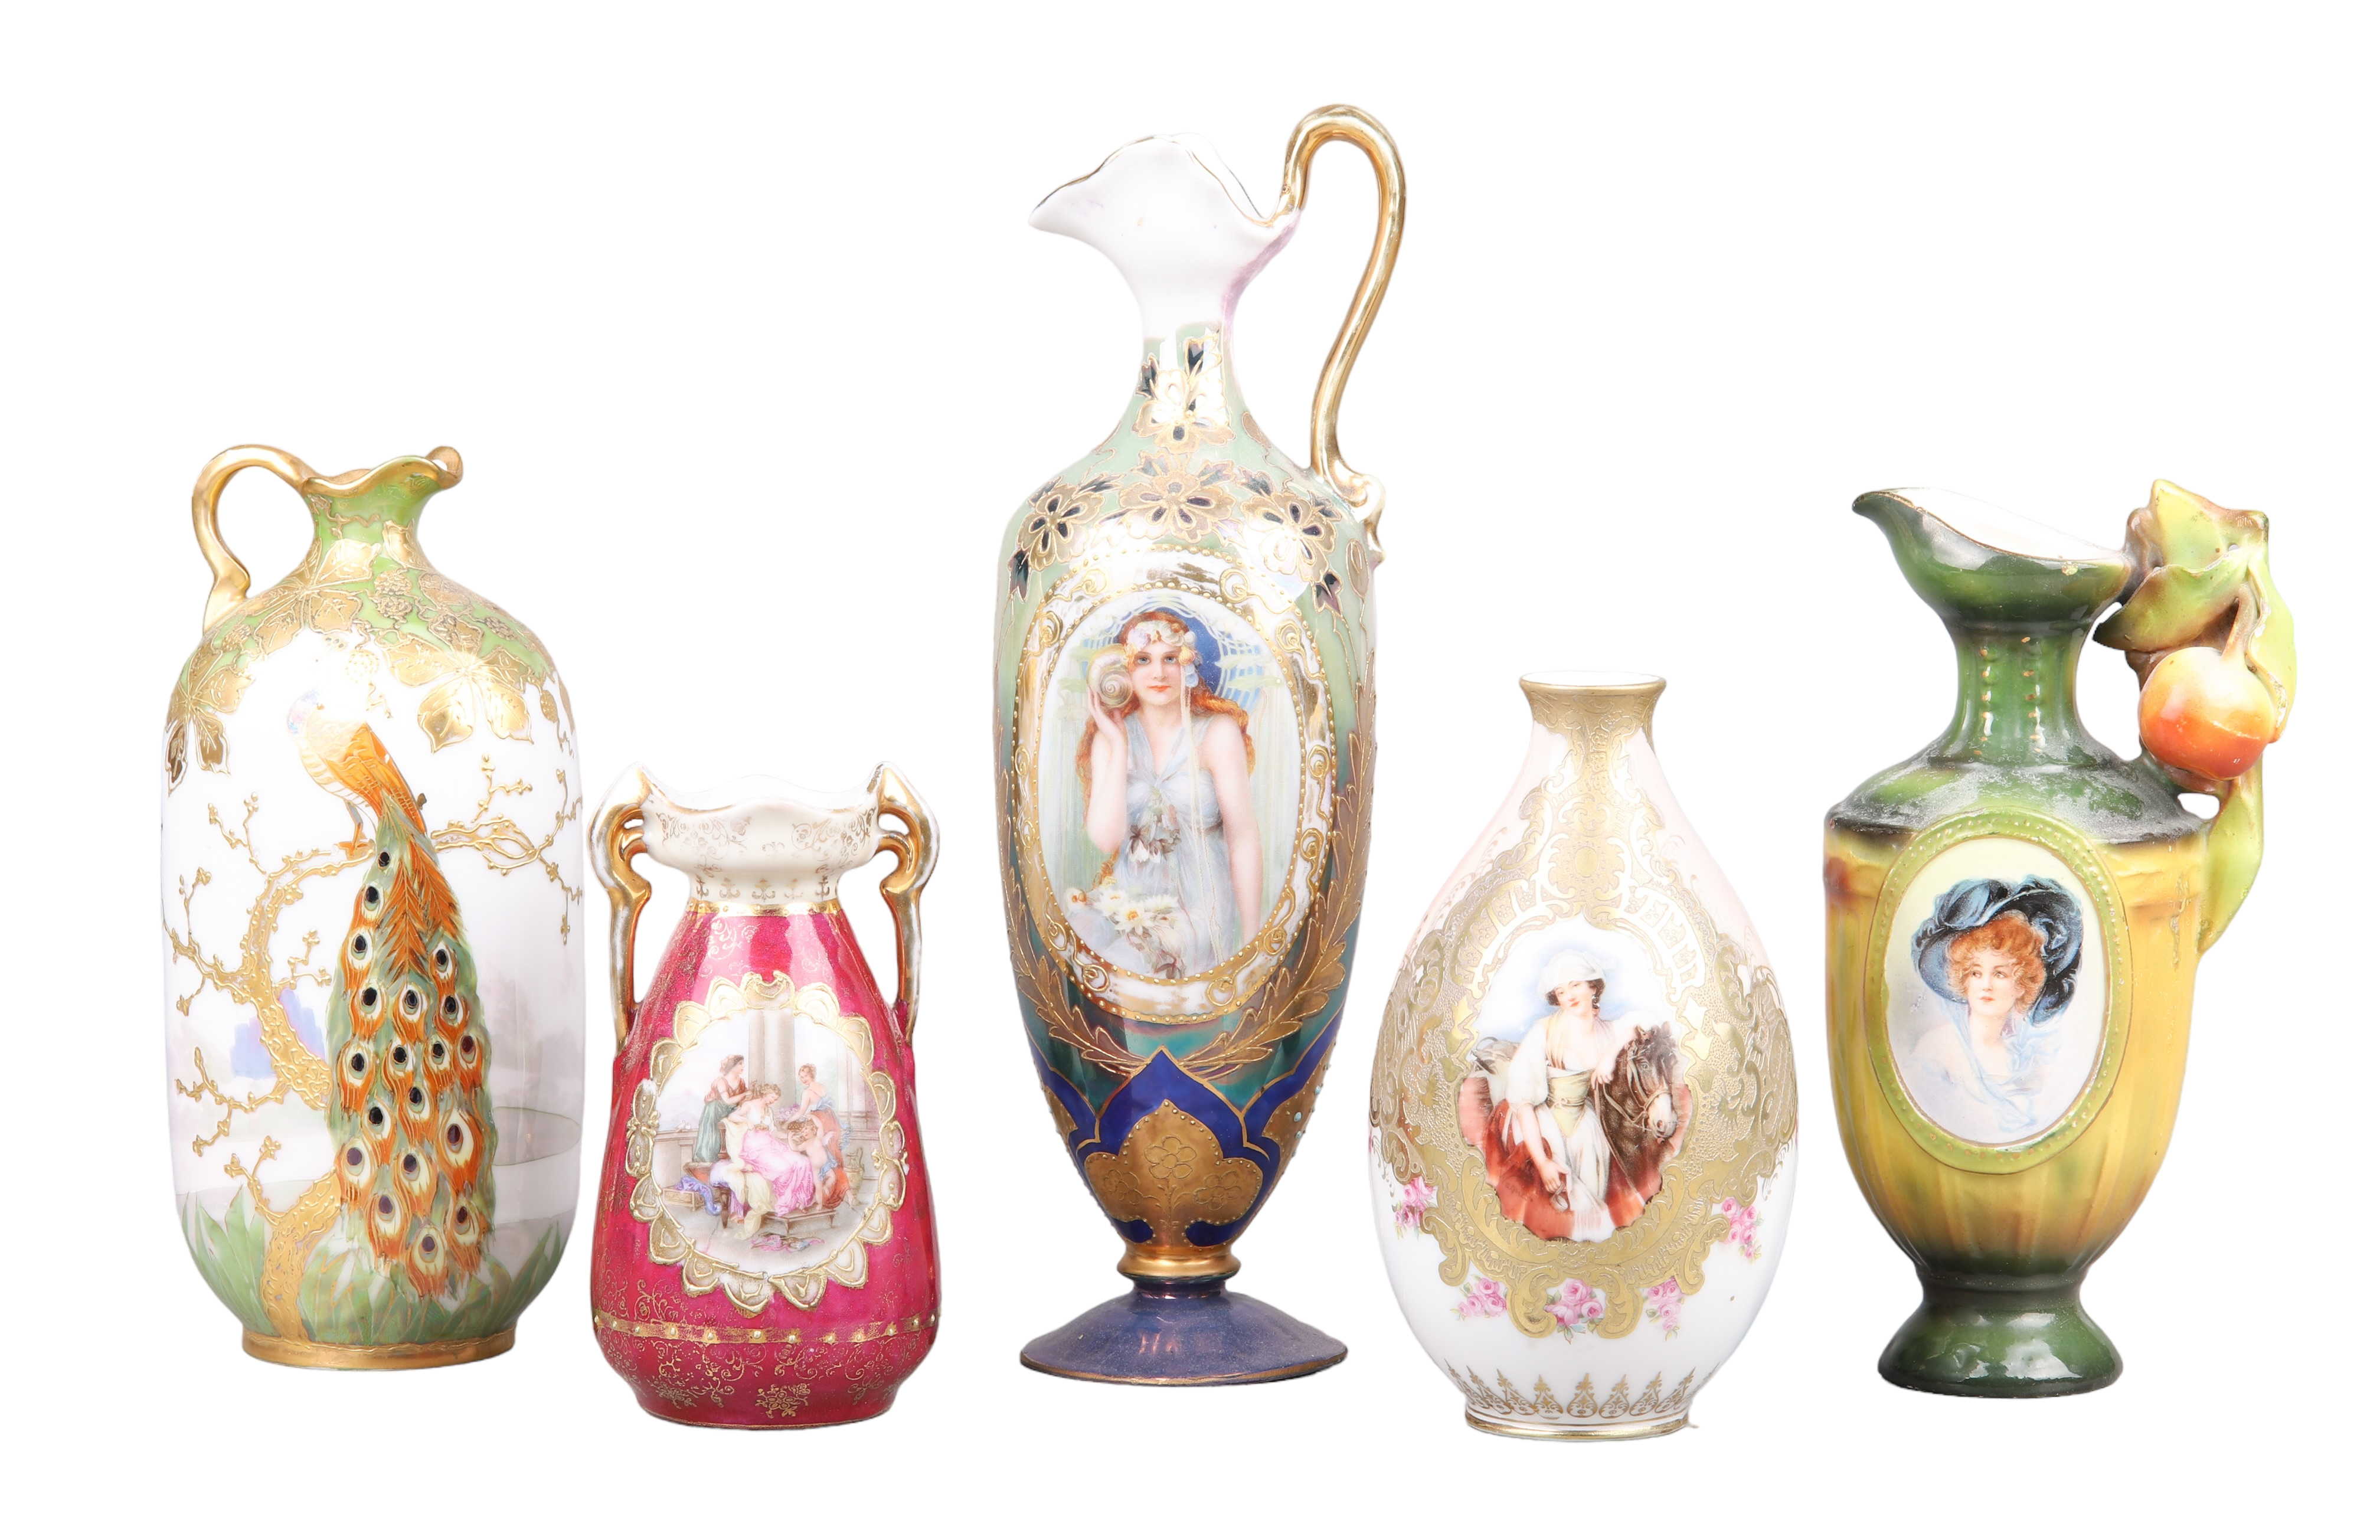  5 Porcelain portrait vases to 2e15cf